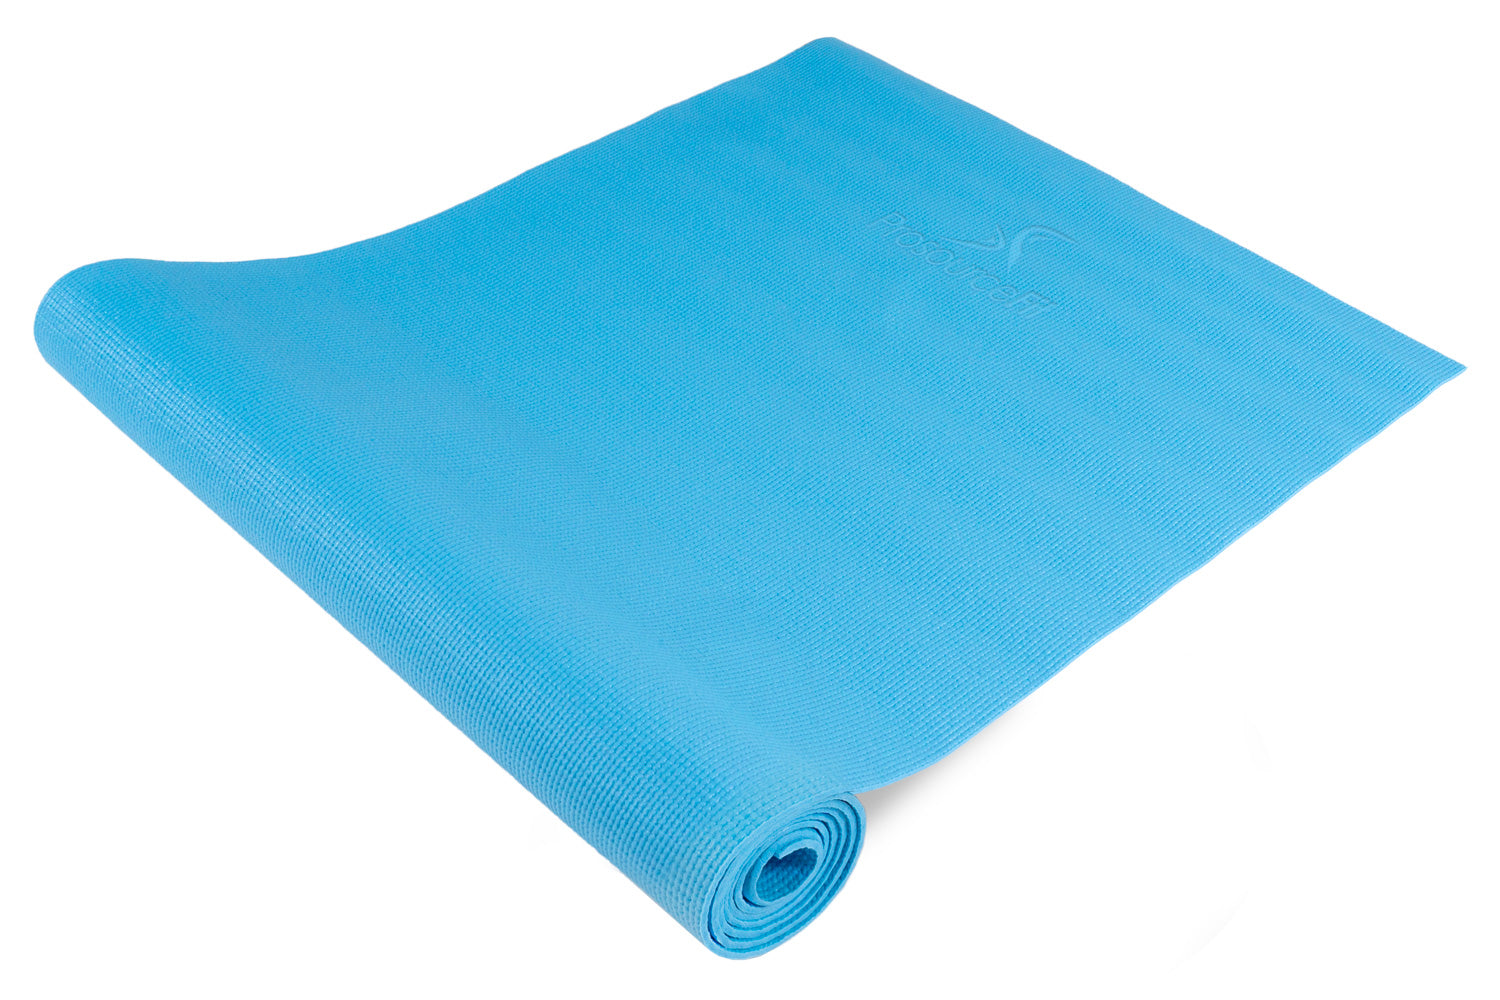 Aqua Classic Yoga Mat 1/8”